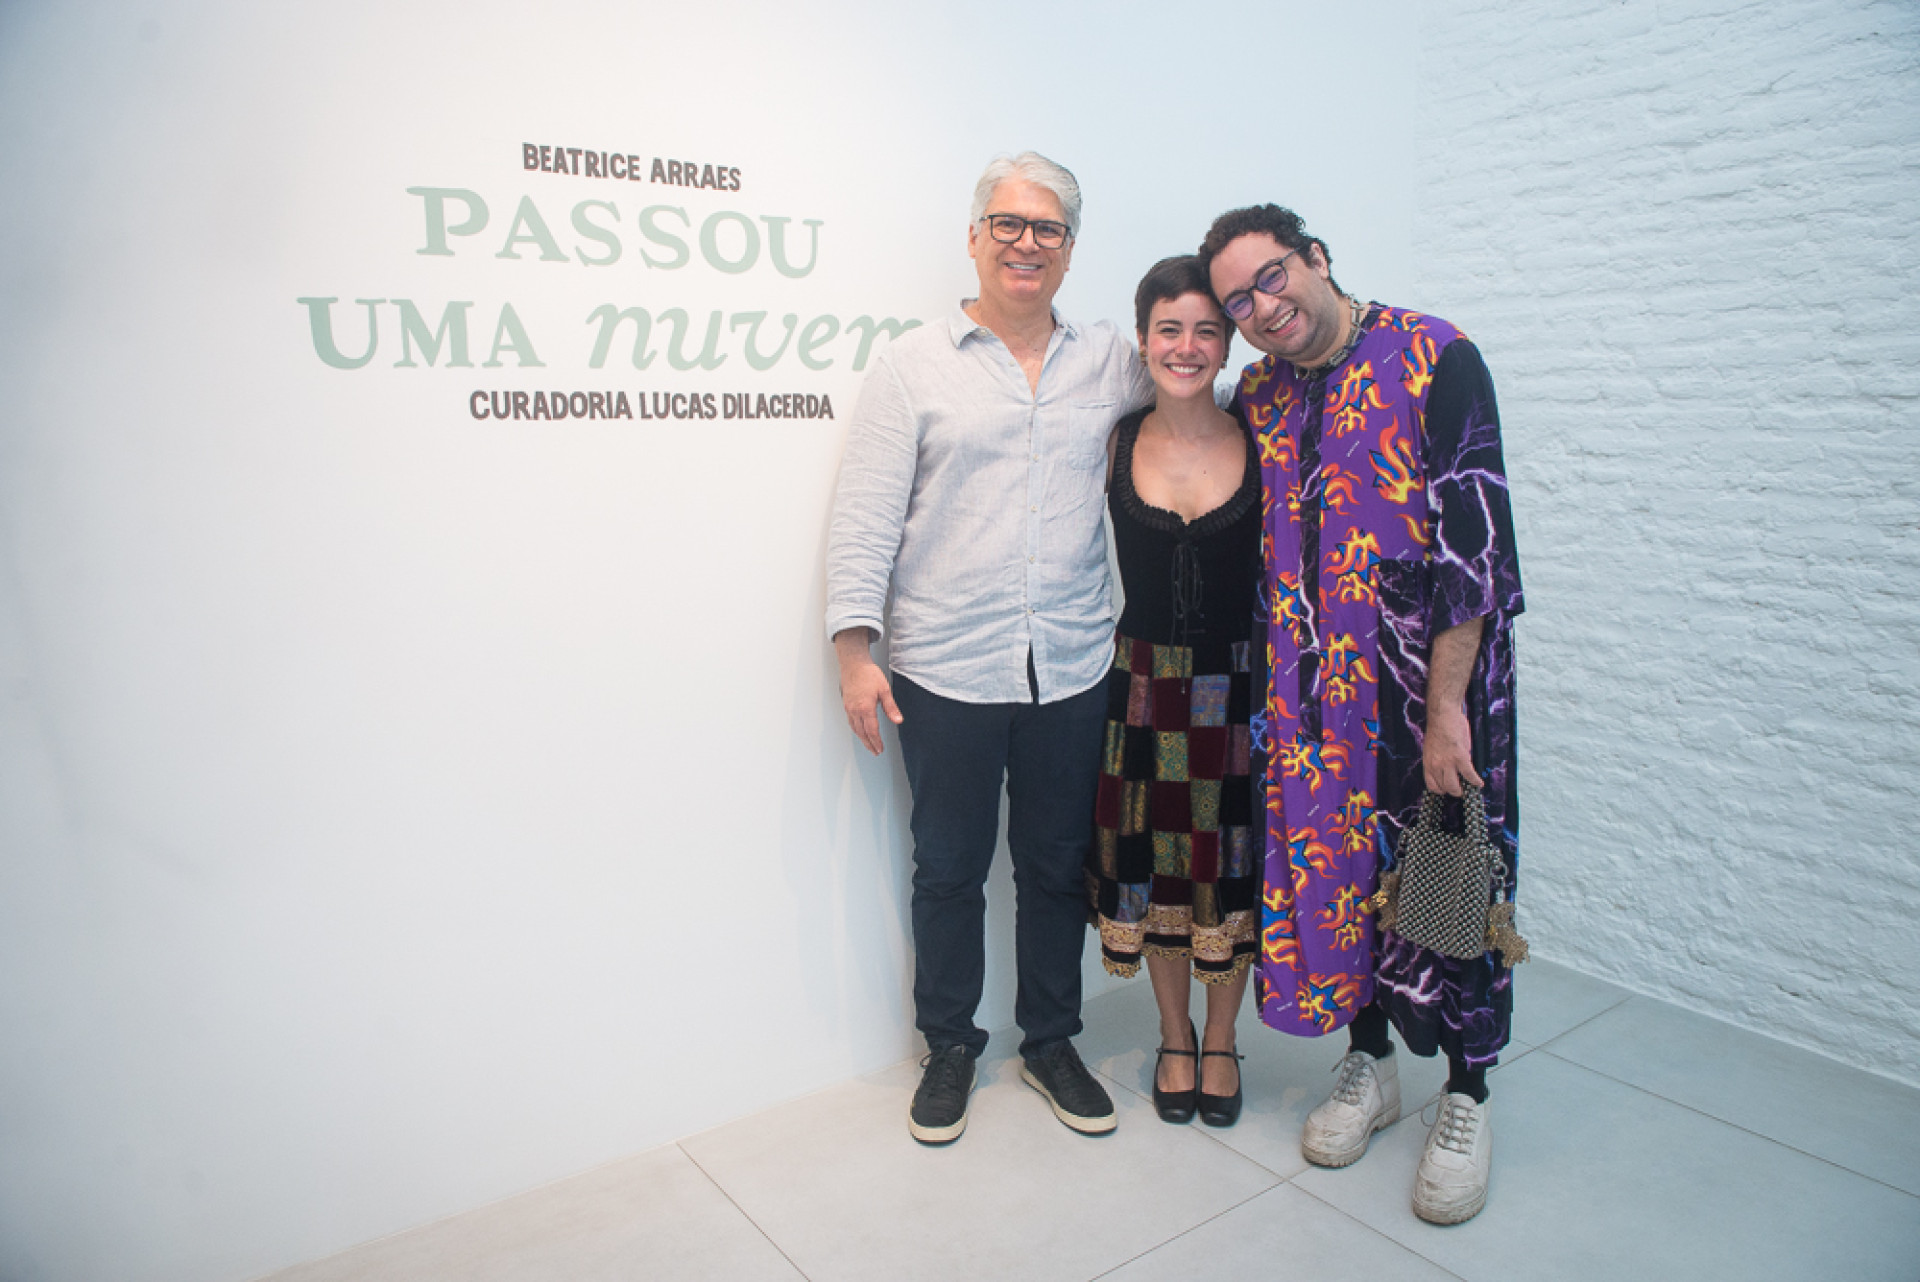 (Foto: CLOVIS HOLANDA E DIVULGAÇÃO )Leonardo Leal, Beatrice Arraes e Lucas Dilacerda